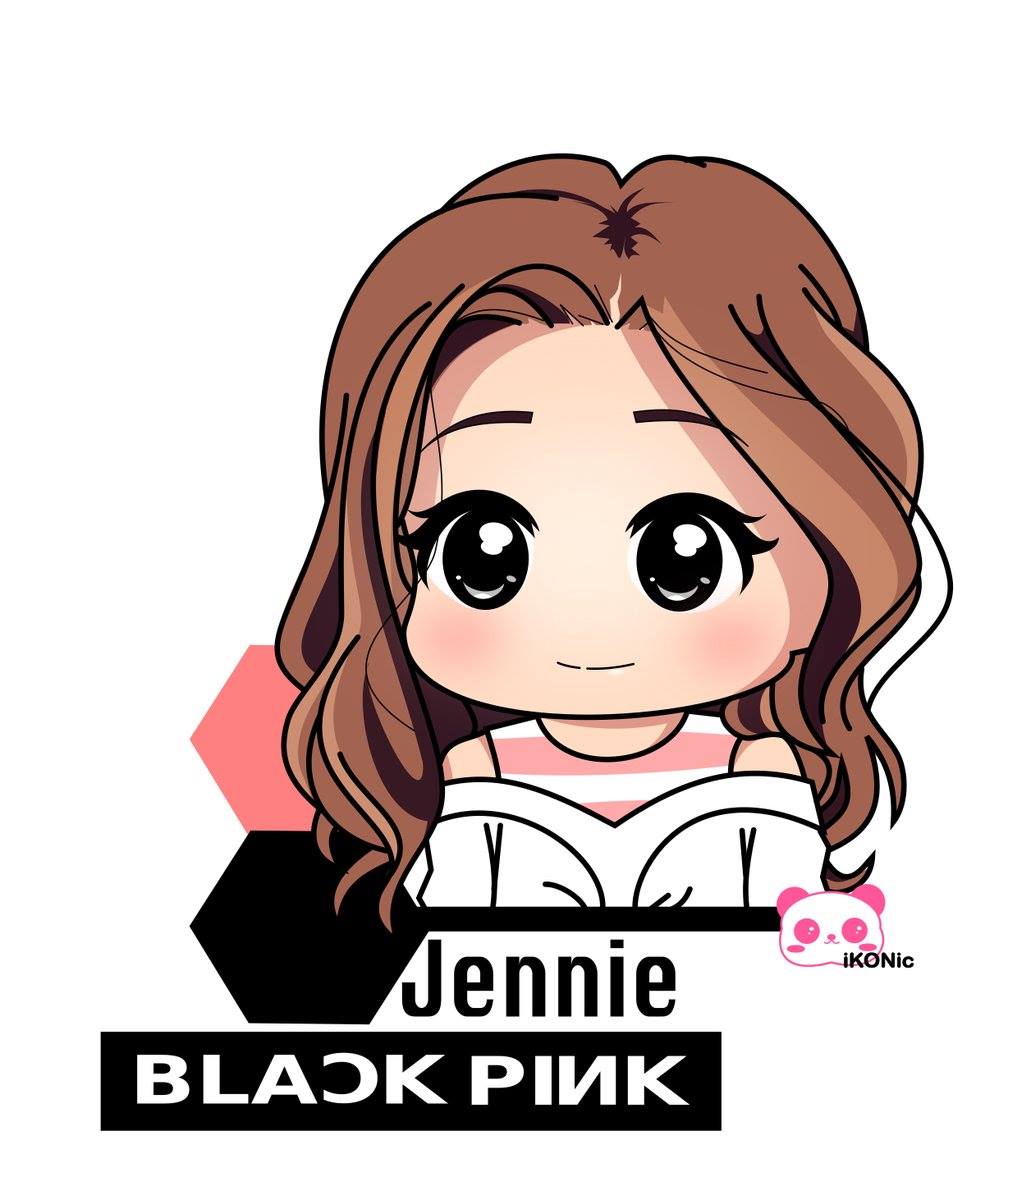 Tổng hợp 100 hình chibi các thành viên Blackpink cute cho Blink